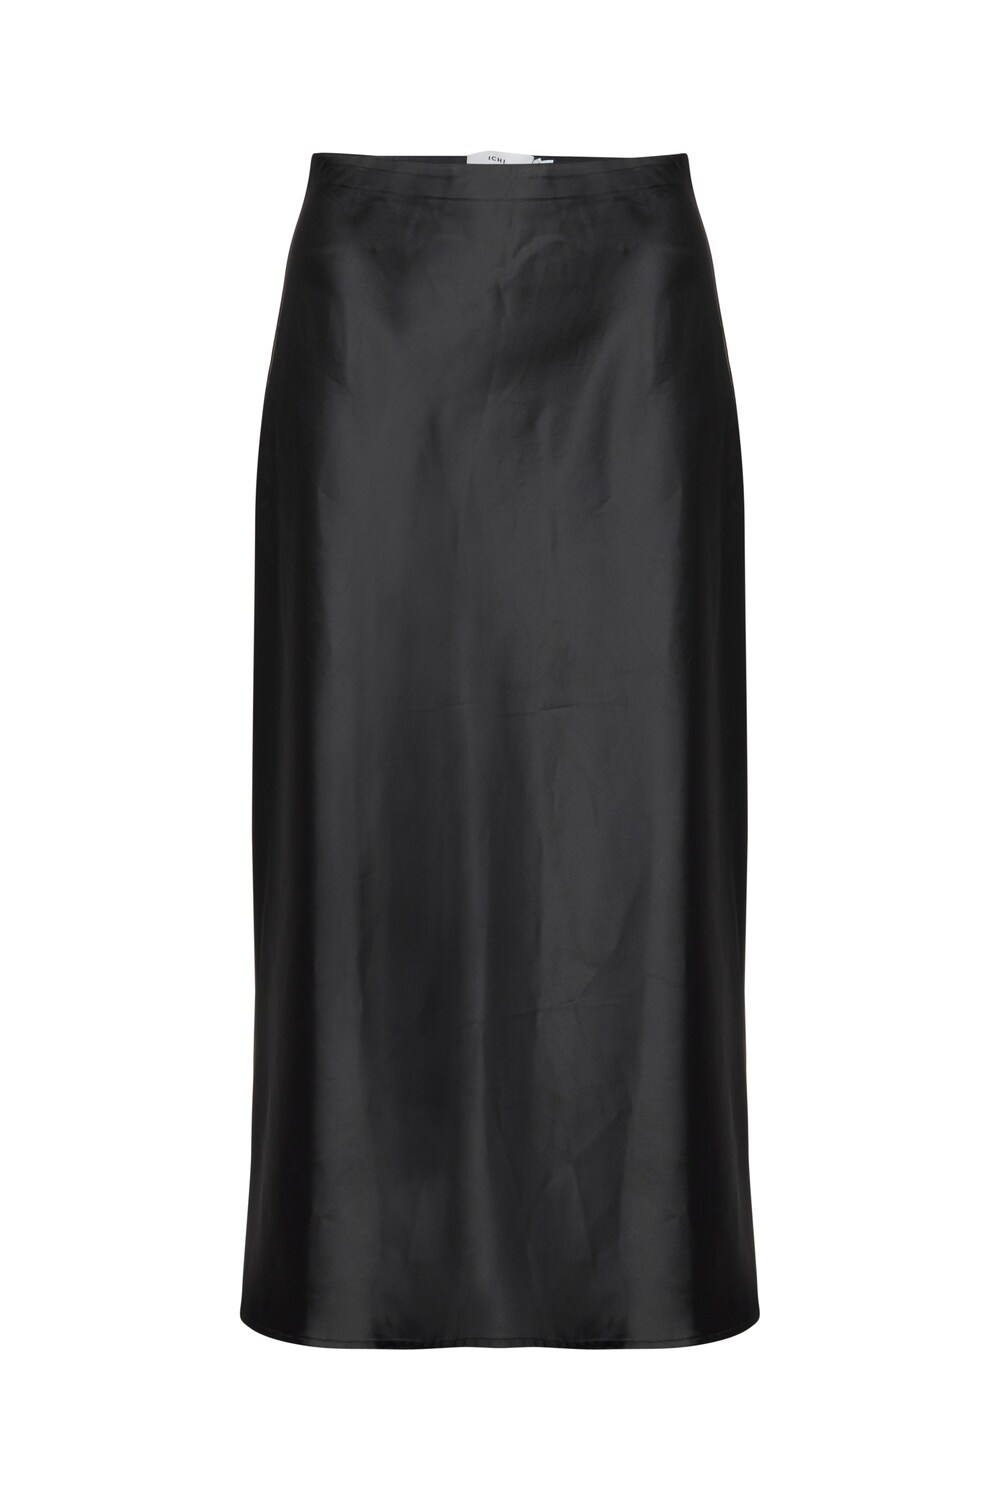 Юбка Ichi IXENDRA, черный юбка ichi 44 размер новая